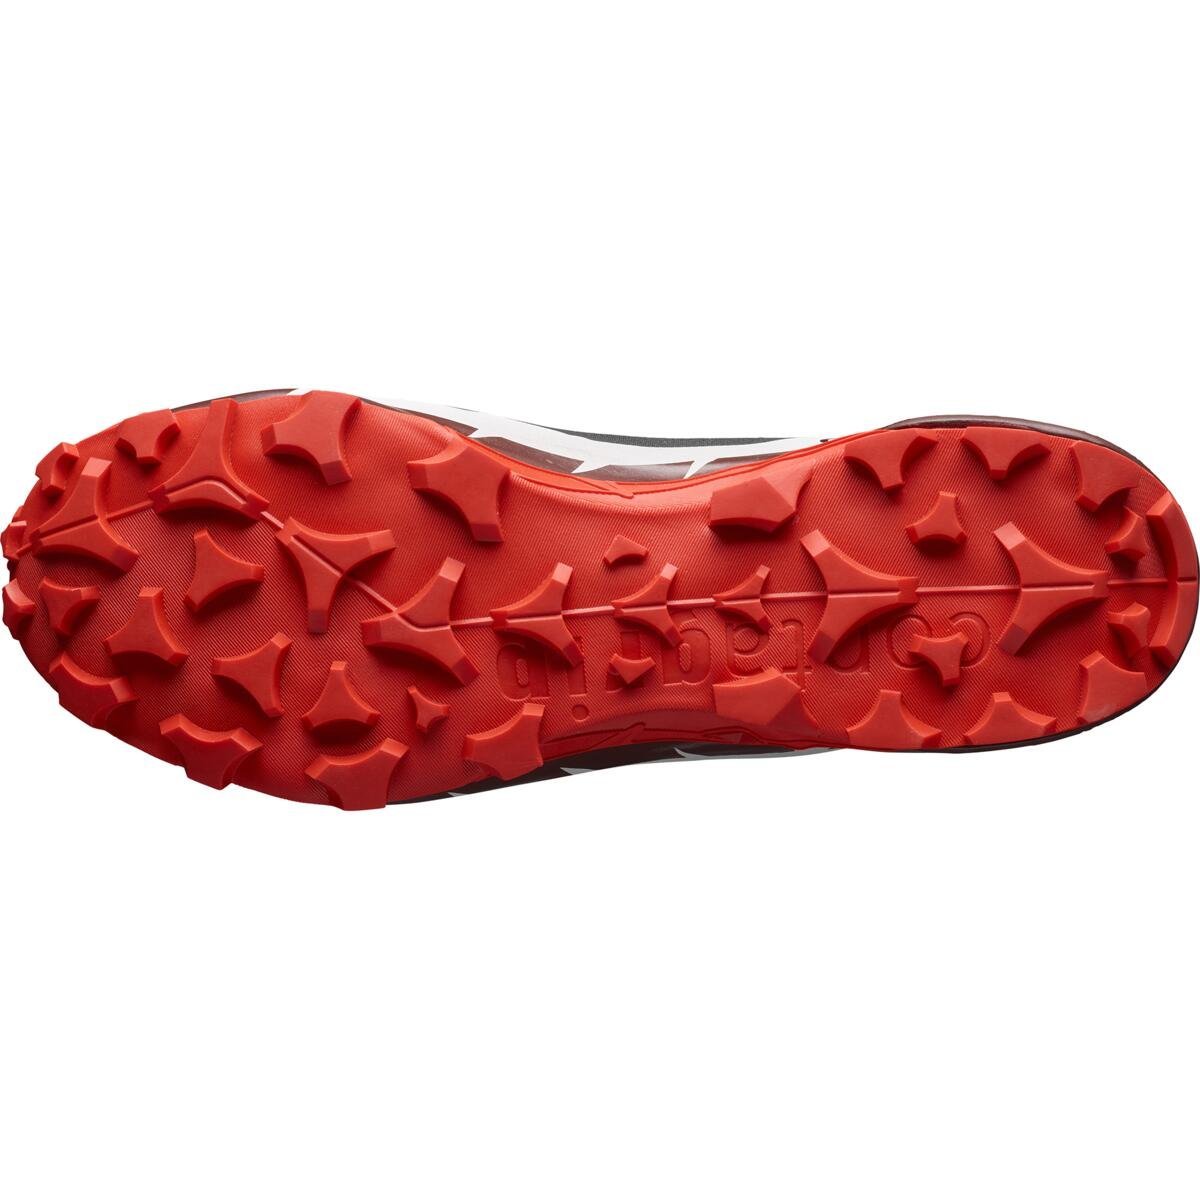 Взуття Salomon Cross Hike Mid GTX 2 M - чорний/червоний